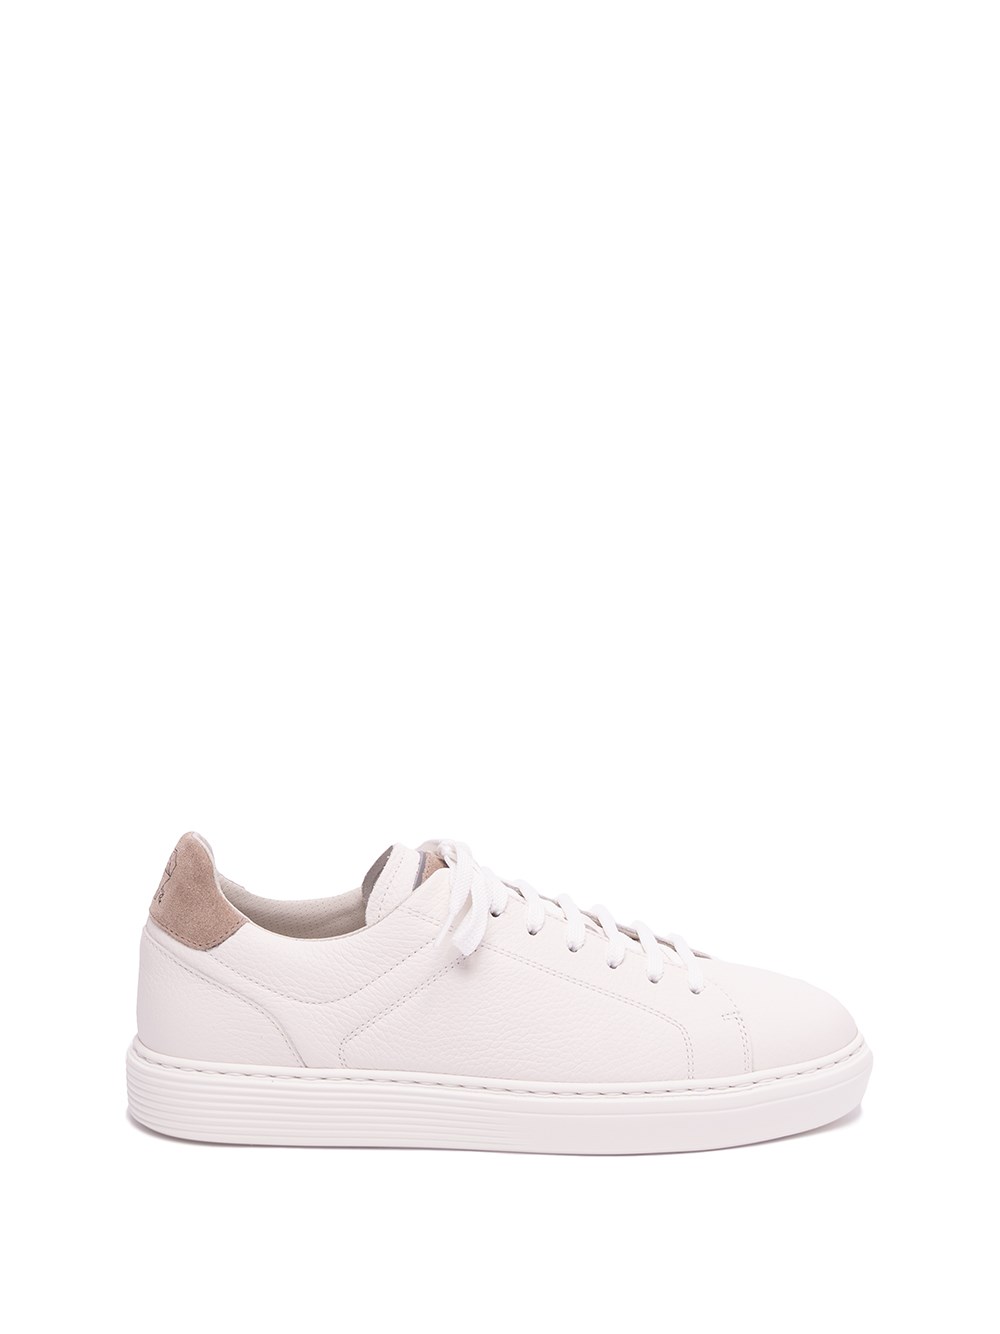 Brunello Cucinelli Sneakers In White